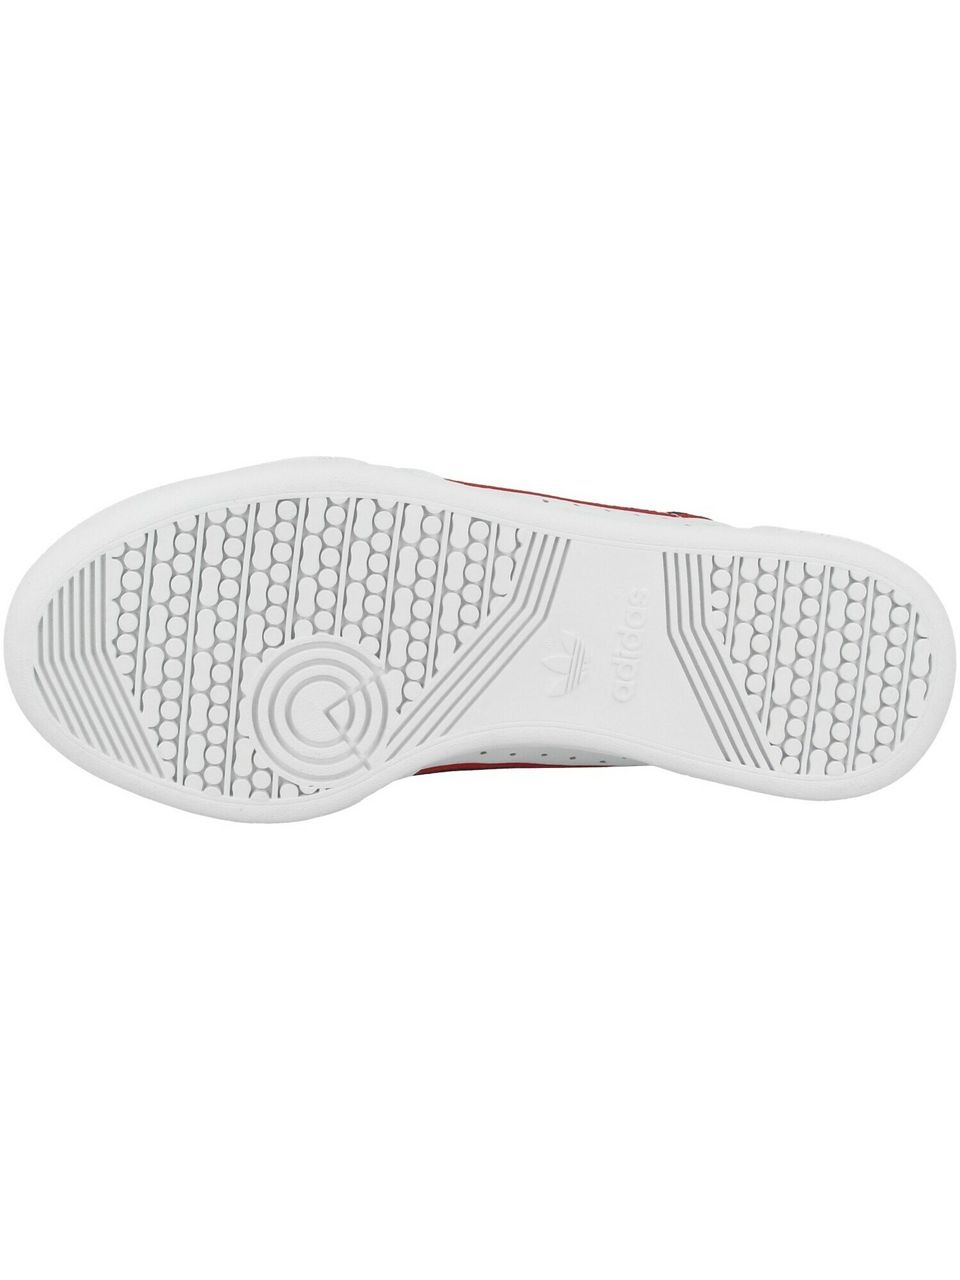 ORIGINALS Sneakers ' Continental 80 '  rood / zwart / wit